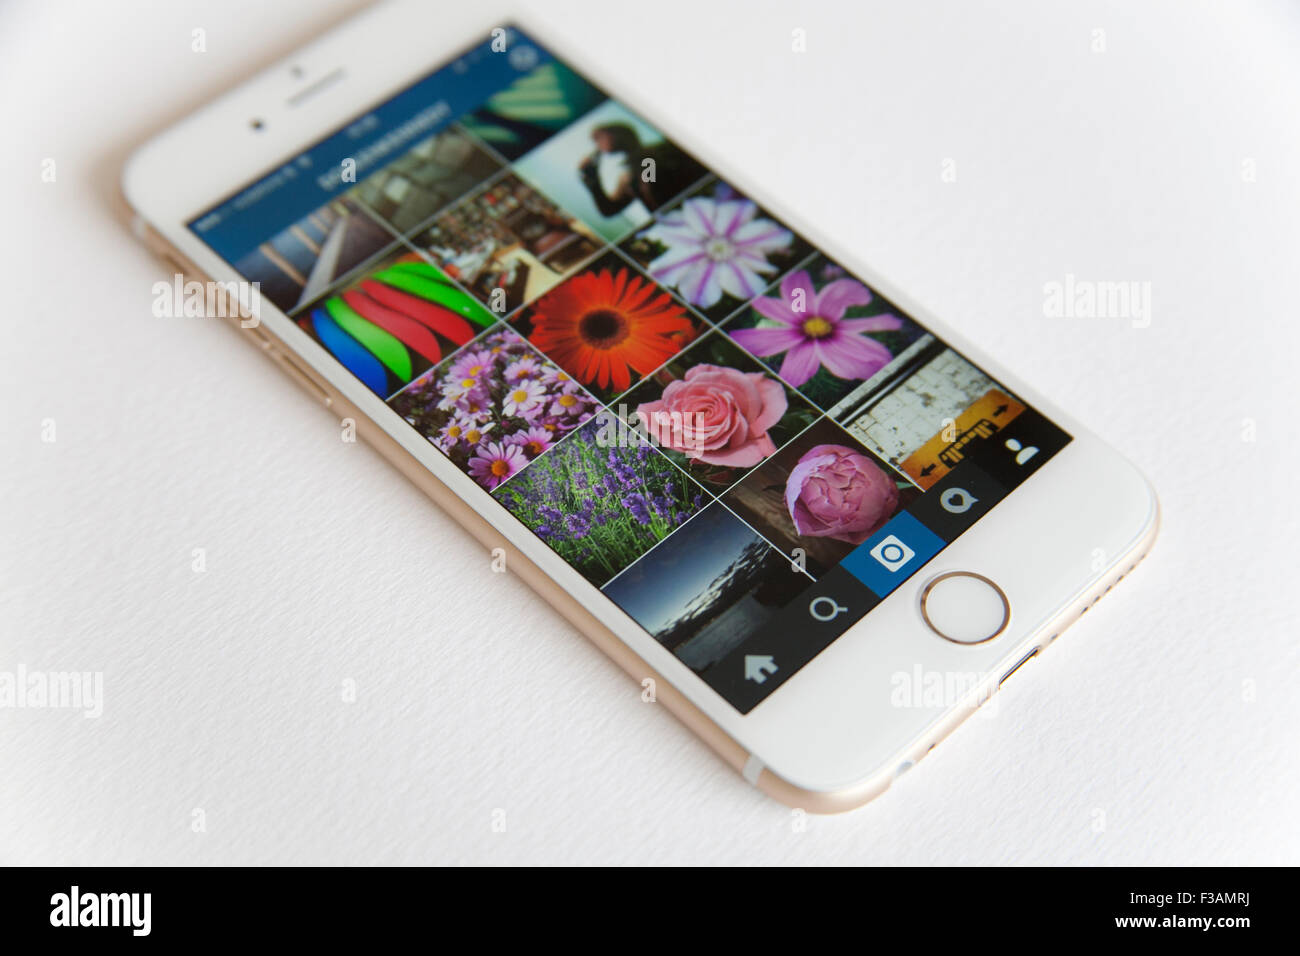 Gold und weiße Apple iPhone 6 mit einem Instagram Foto feed vor einem weißen Hintergrund Stockfoto